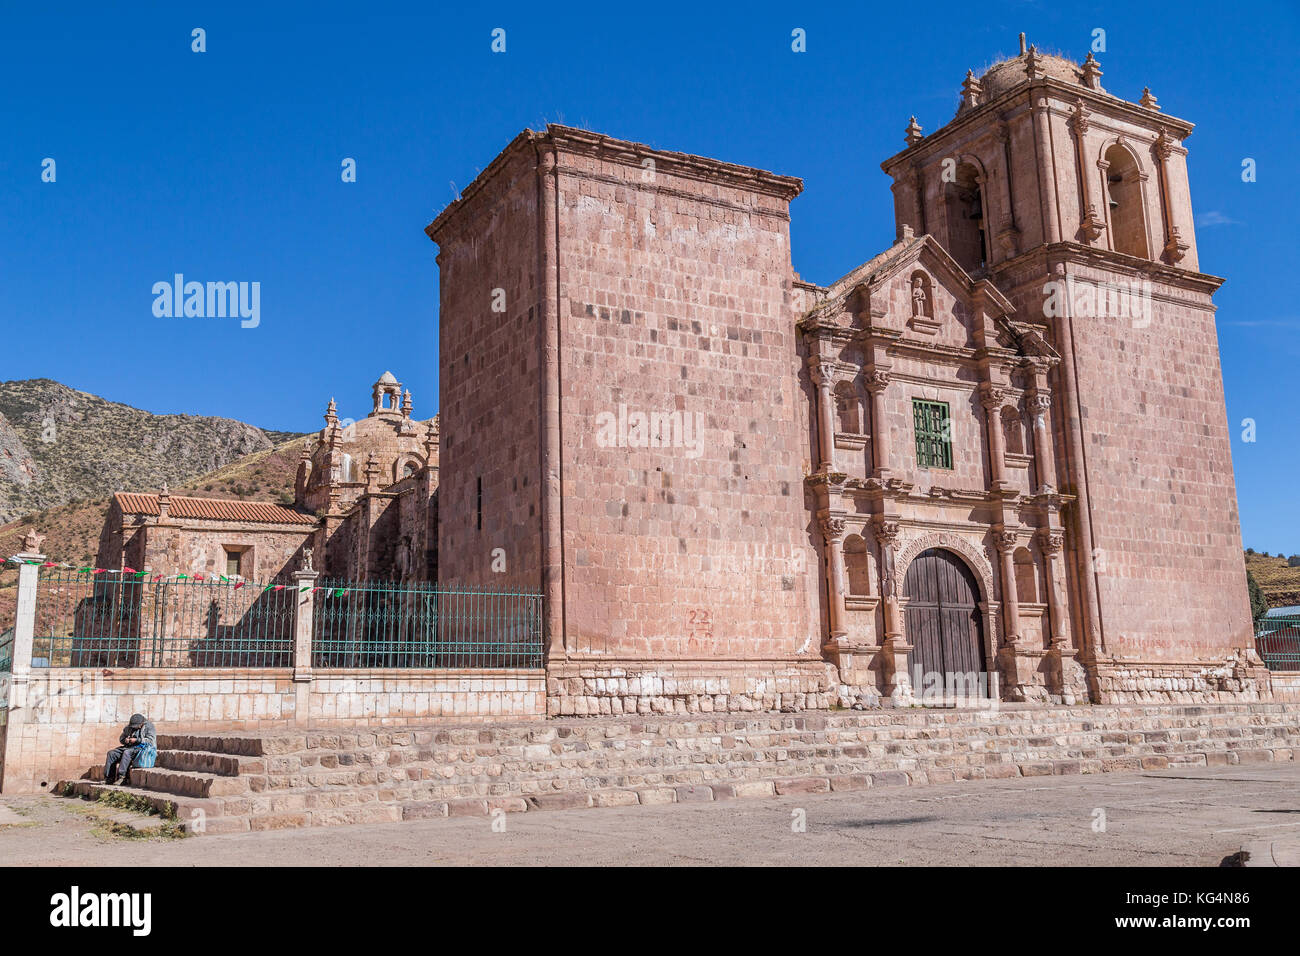 Spanischen Kolonialstil iglesia de pukara Kathedrale in pukara, Peru Stockfoto